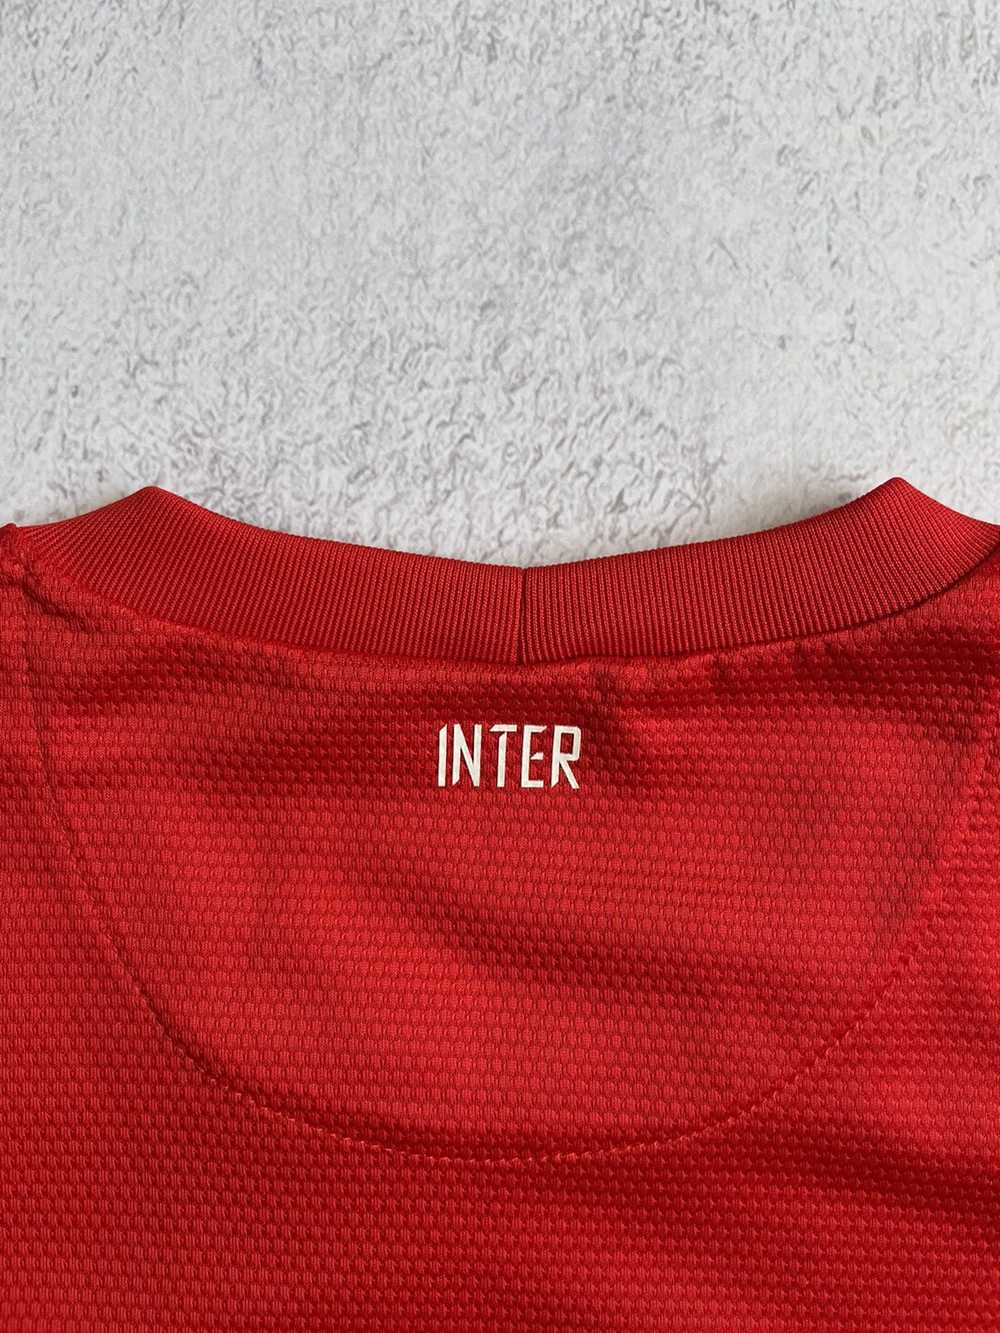 Nike × Soccer Jersey × Very Rare Nike Inter Milan… - image 8